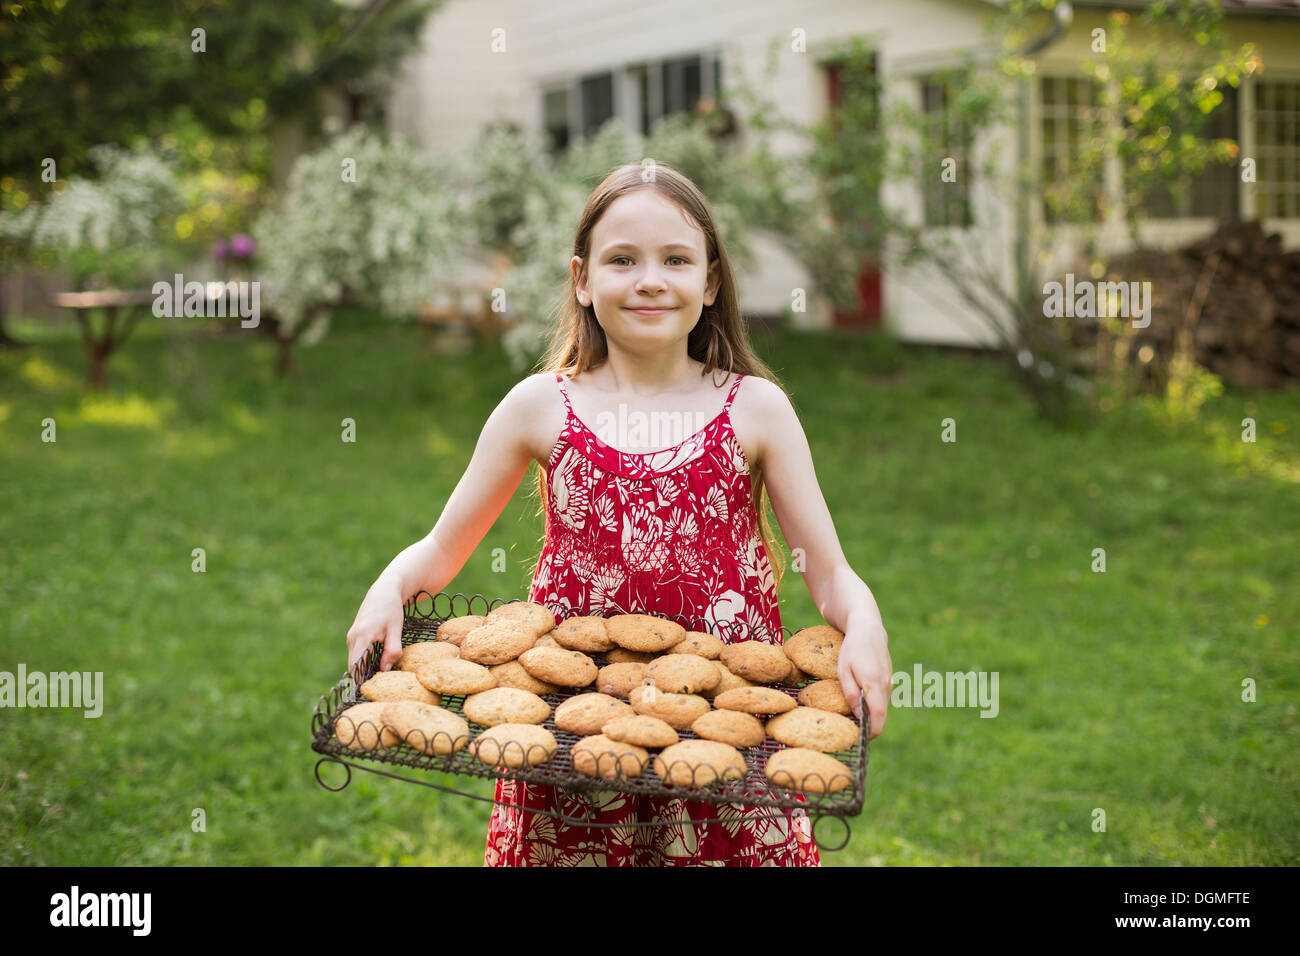 La cottura biscotti fatti in casa. Una giovane ragazza con un vassoio di biscotti appena sfornati. Foto Stock